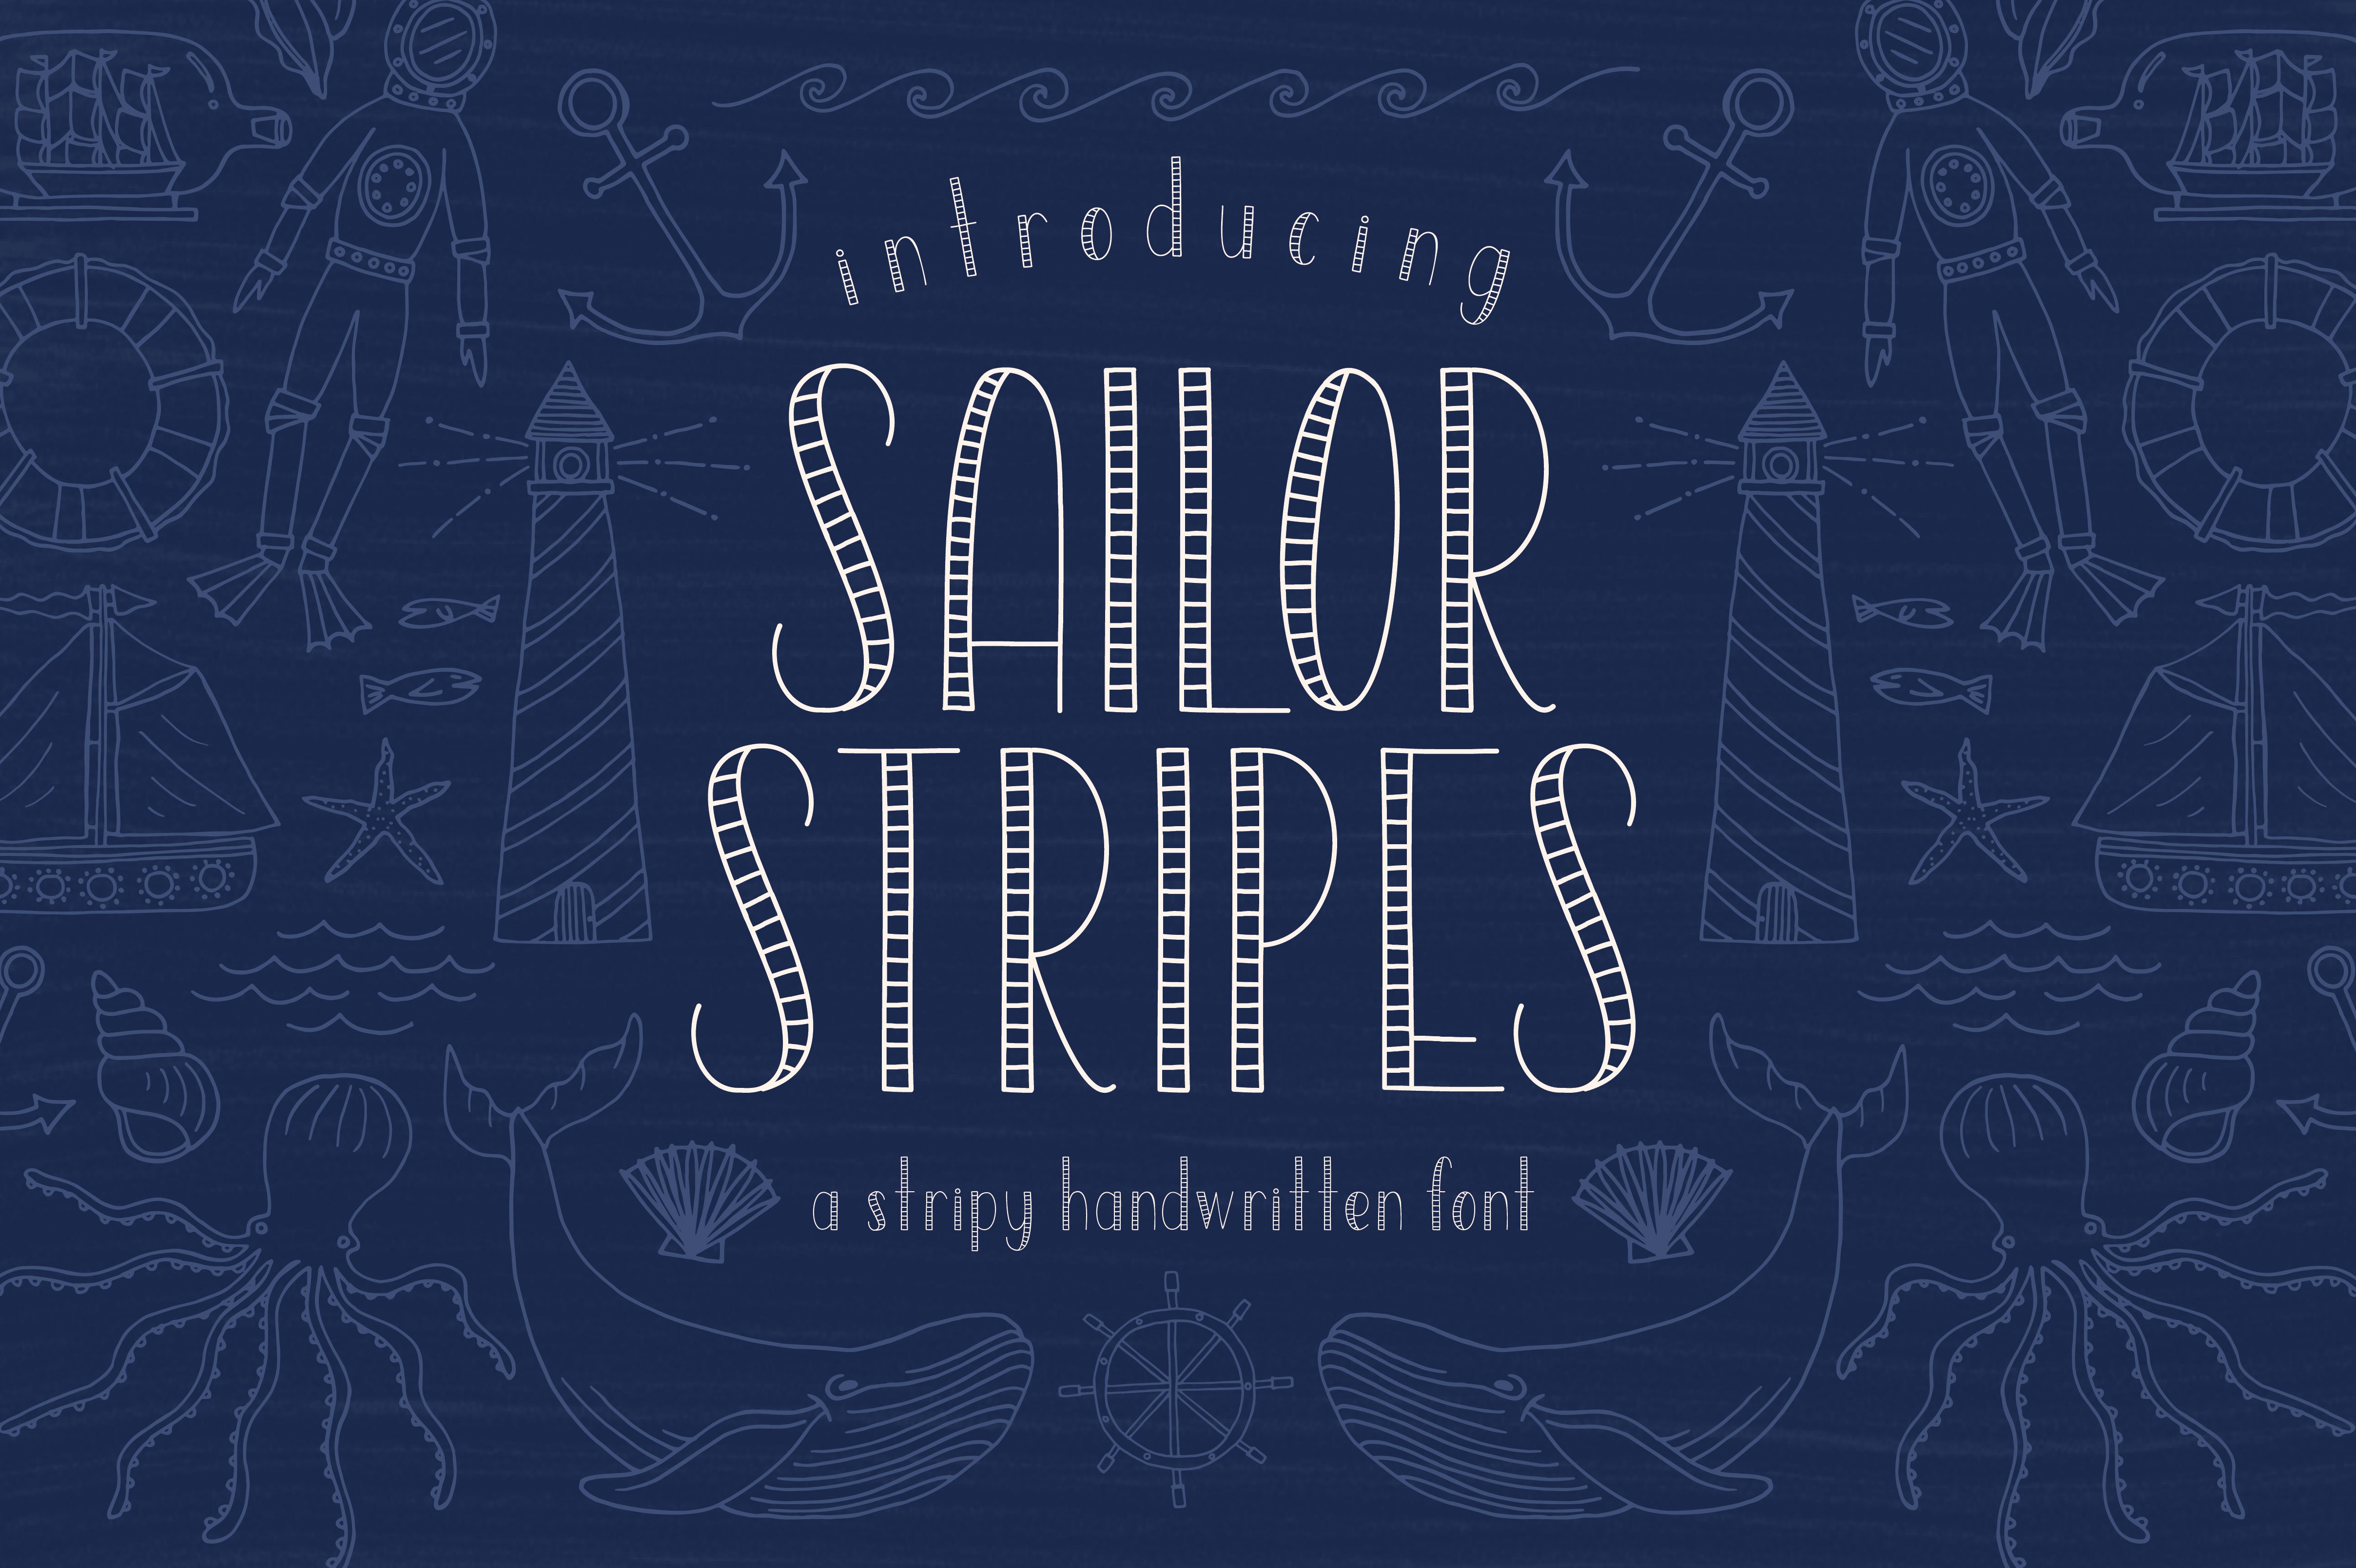 Sailor Stripes Font + Illustrations cover image.